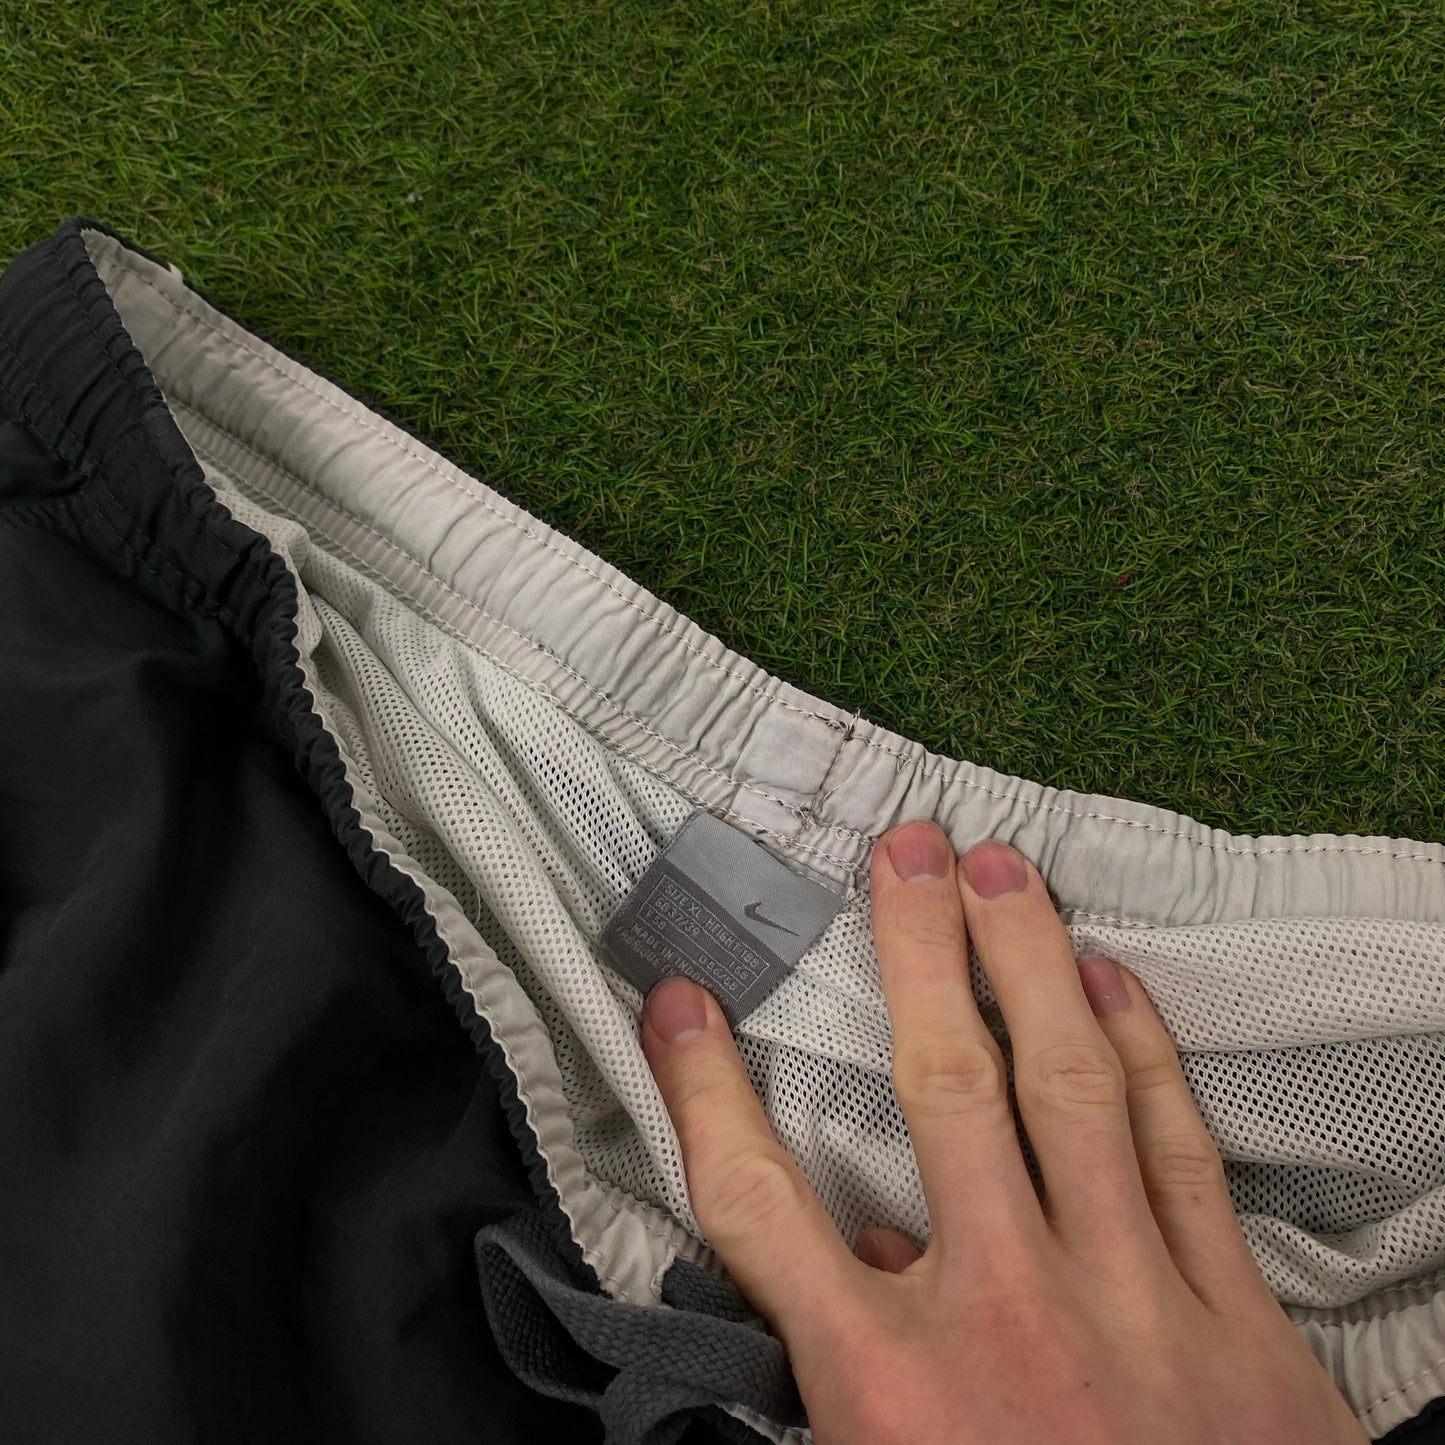 00s Nike Piping Shorts Grey XL